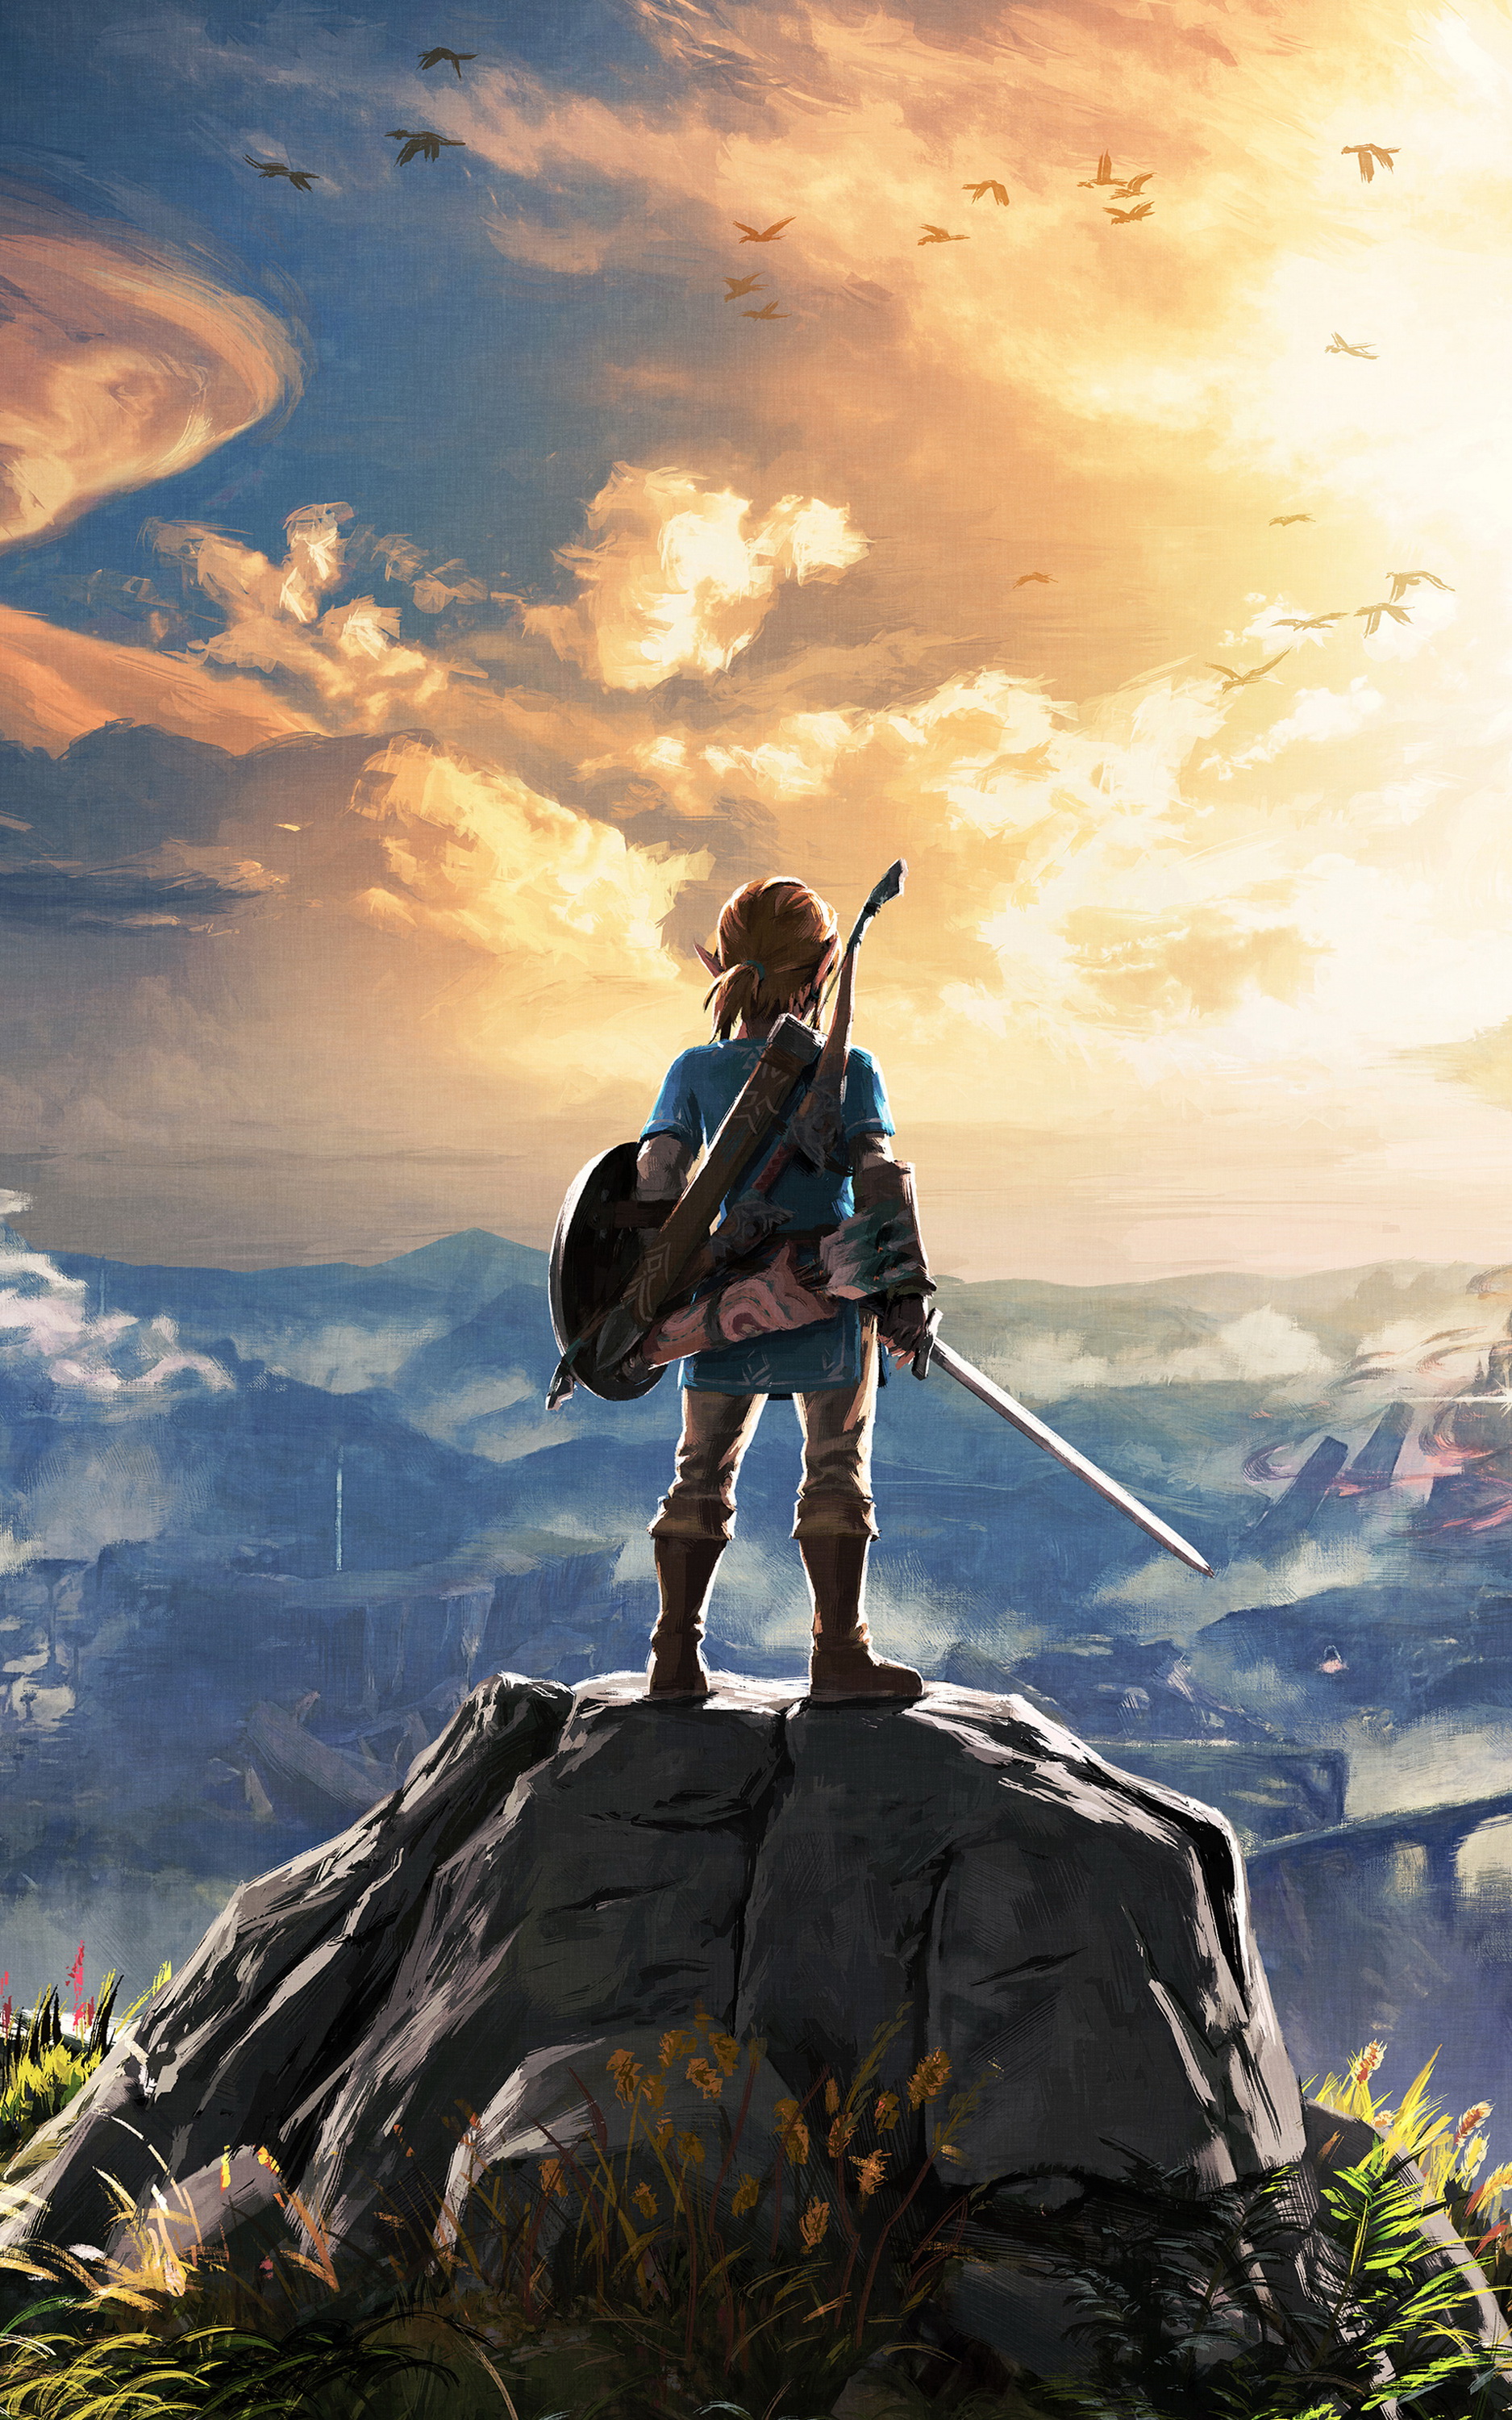 Legend of Zelda là một trong những loạt trò chơi được yêu thích nhất. Những hình ảnh liên quan đến câu chuyện về Zelda luôn đem lại cảm giác thú vị và kích thích. Hãy cùng trải nghiệm và khám phá những hình ảnh trong trò chơi này.